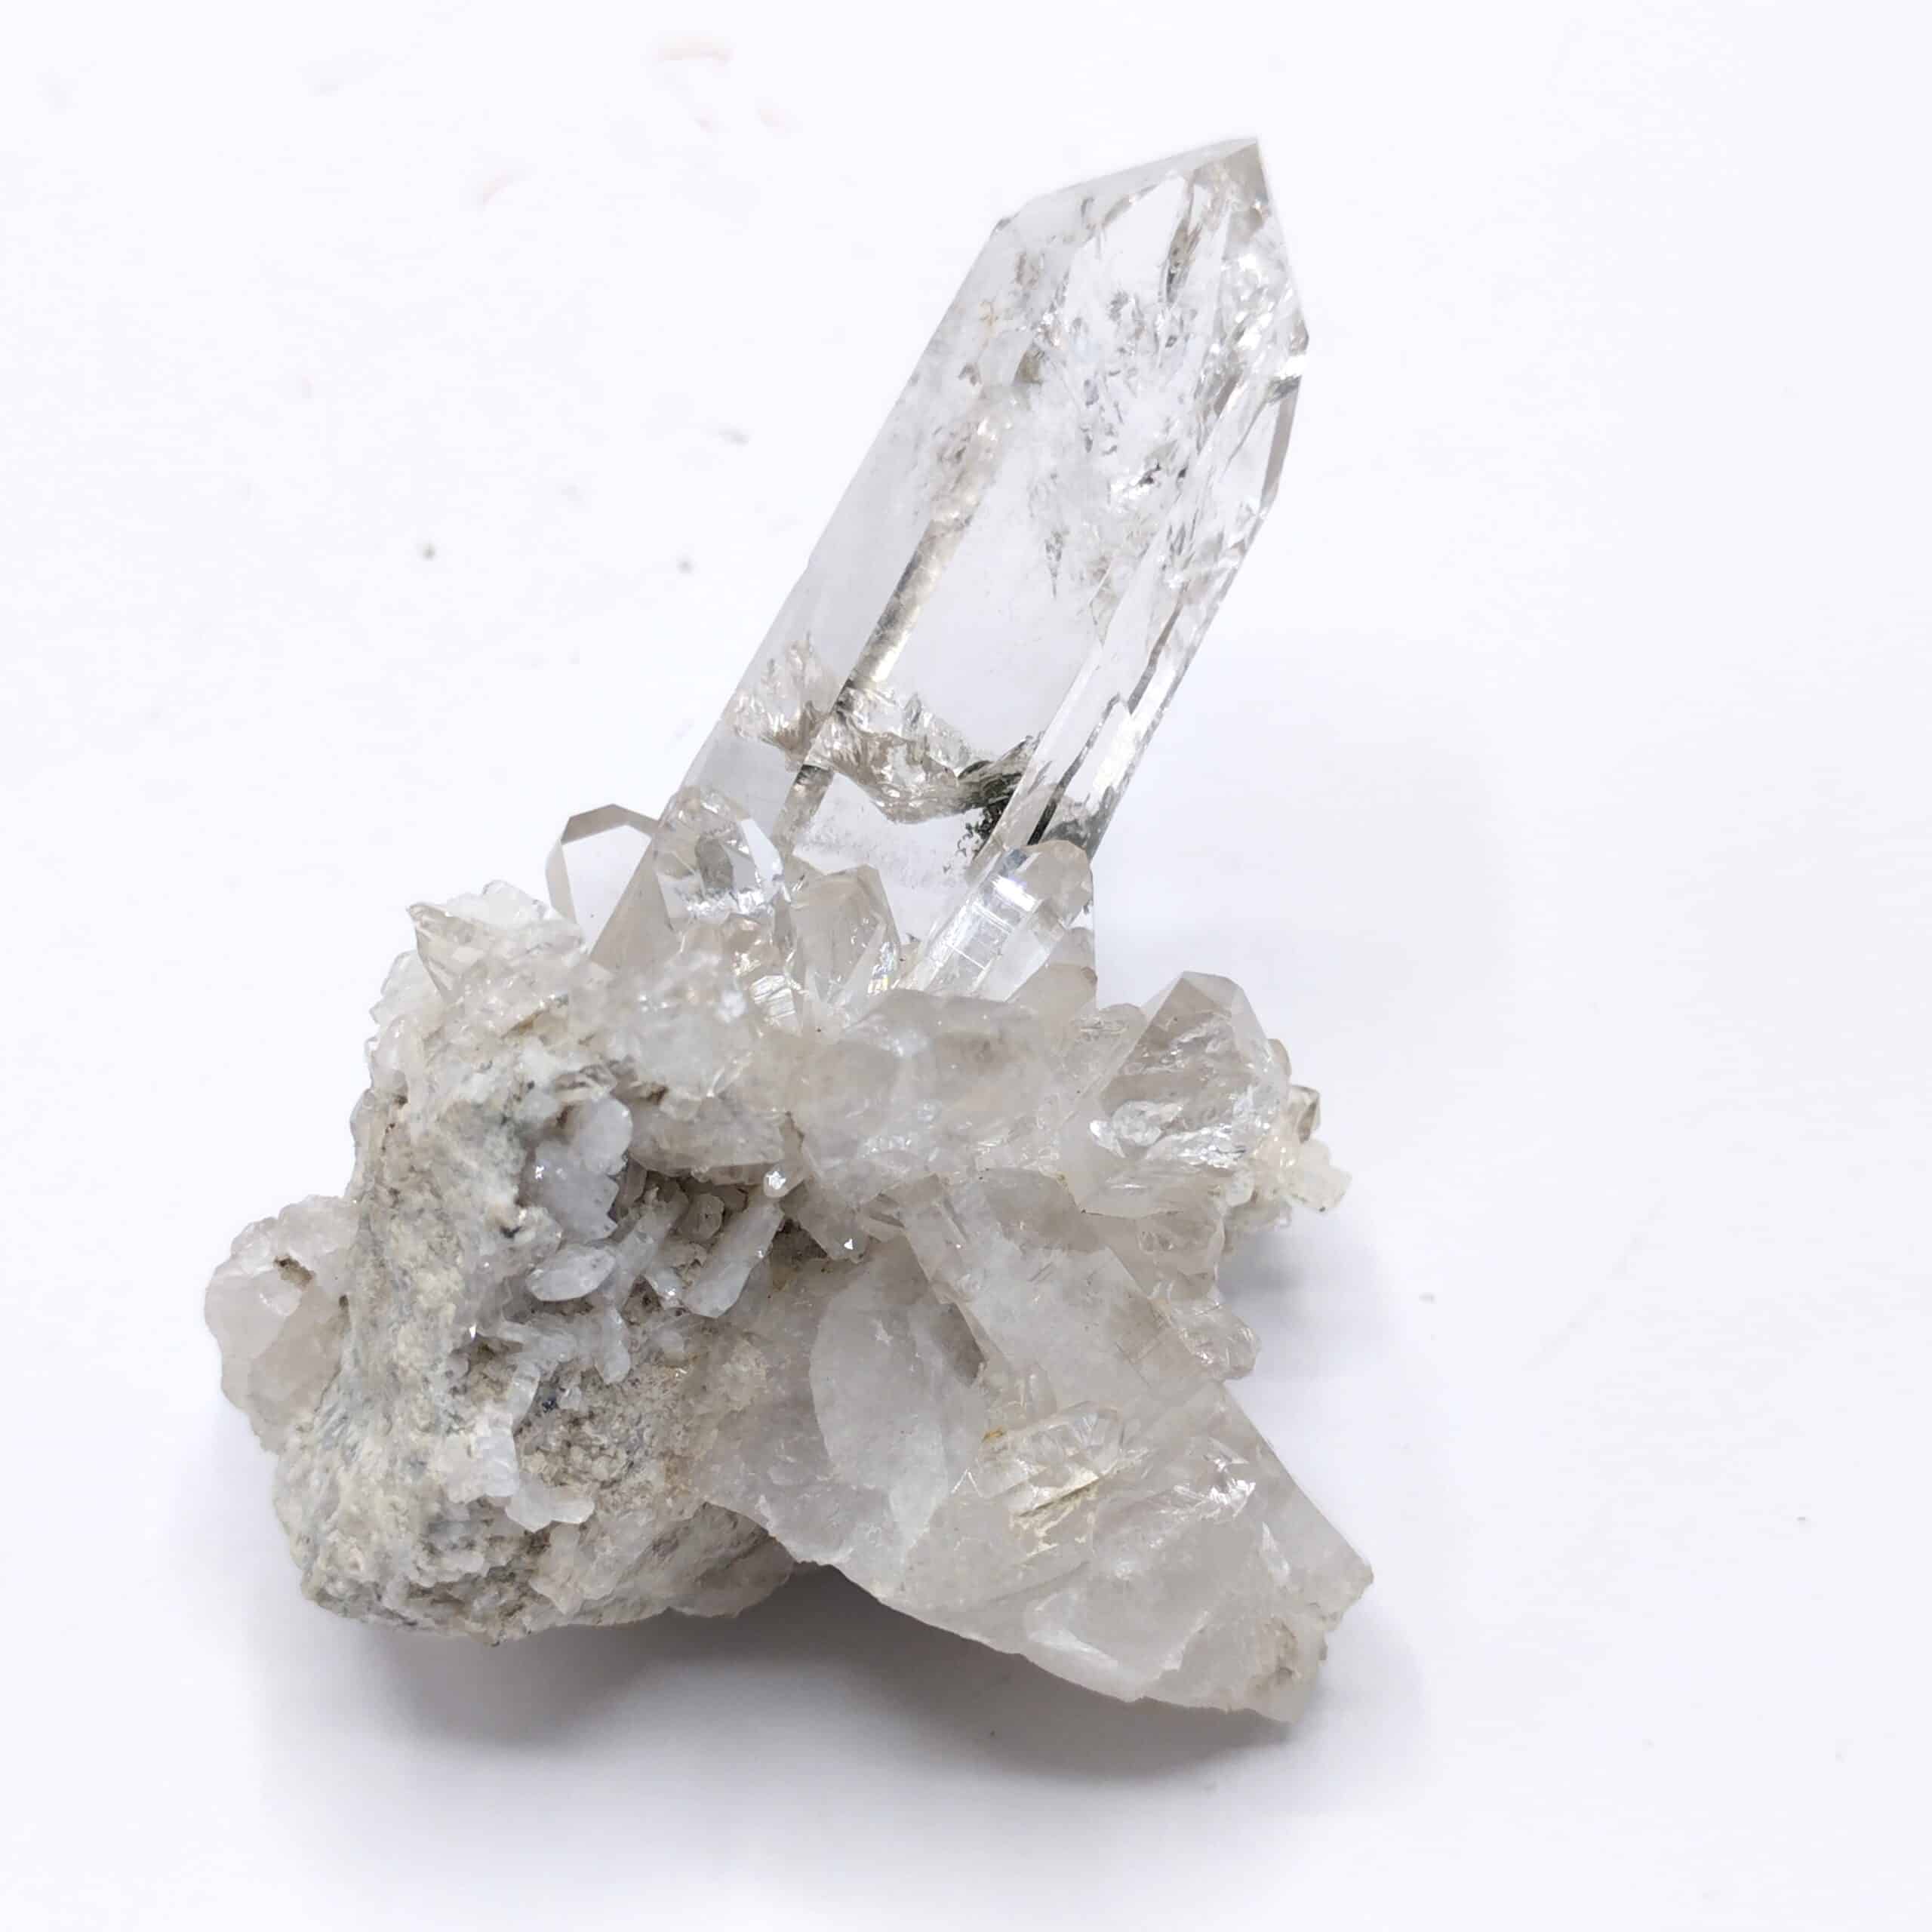 Cristal de roche (Quartz), Le Clot, Saint-Christophe-en-Oisans, Isère.